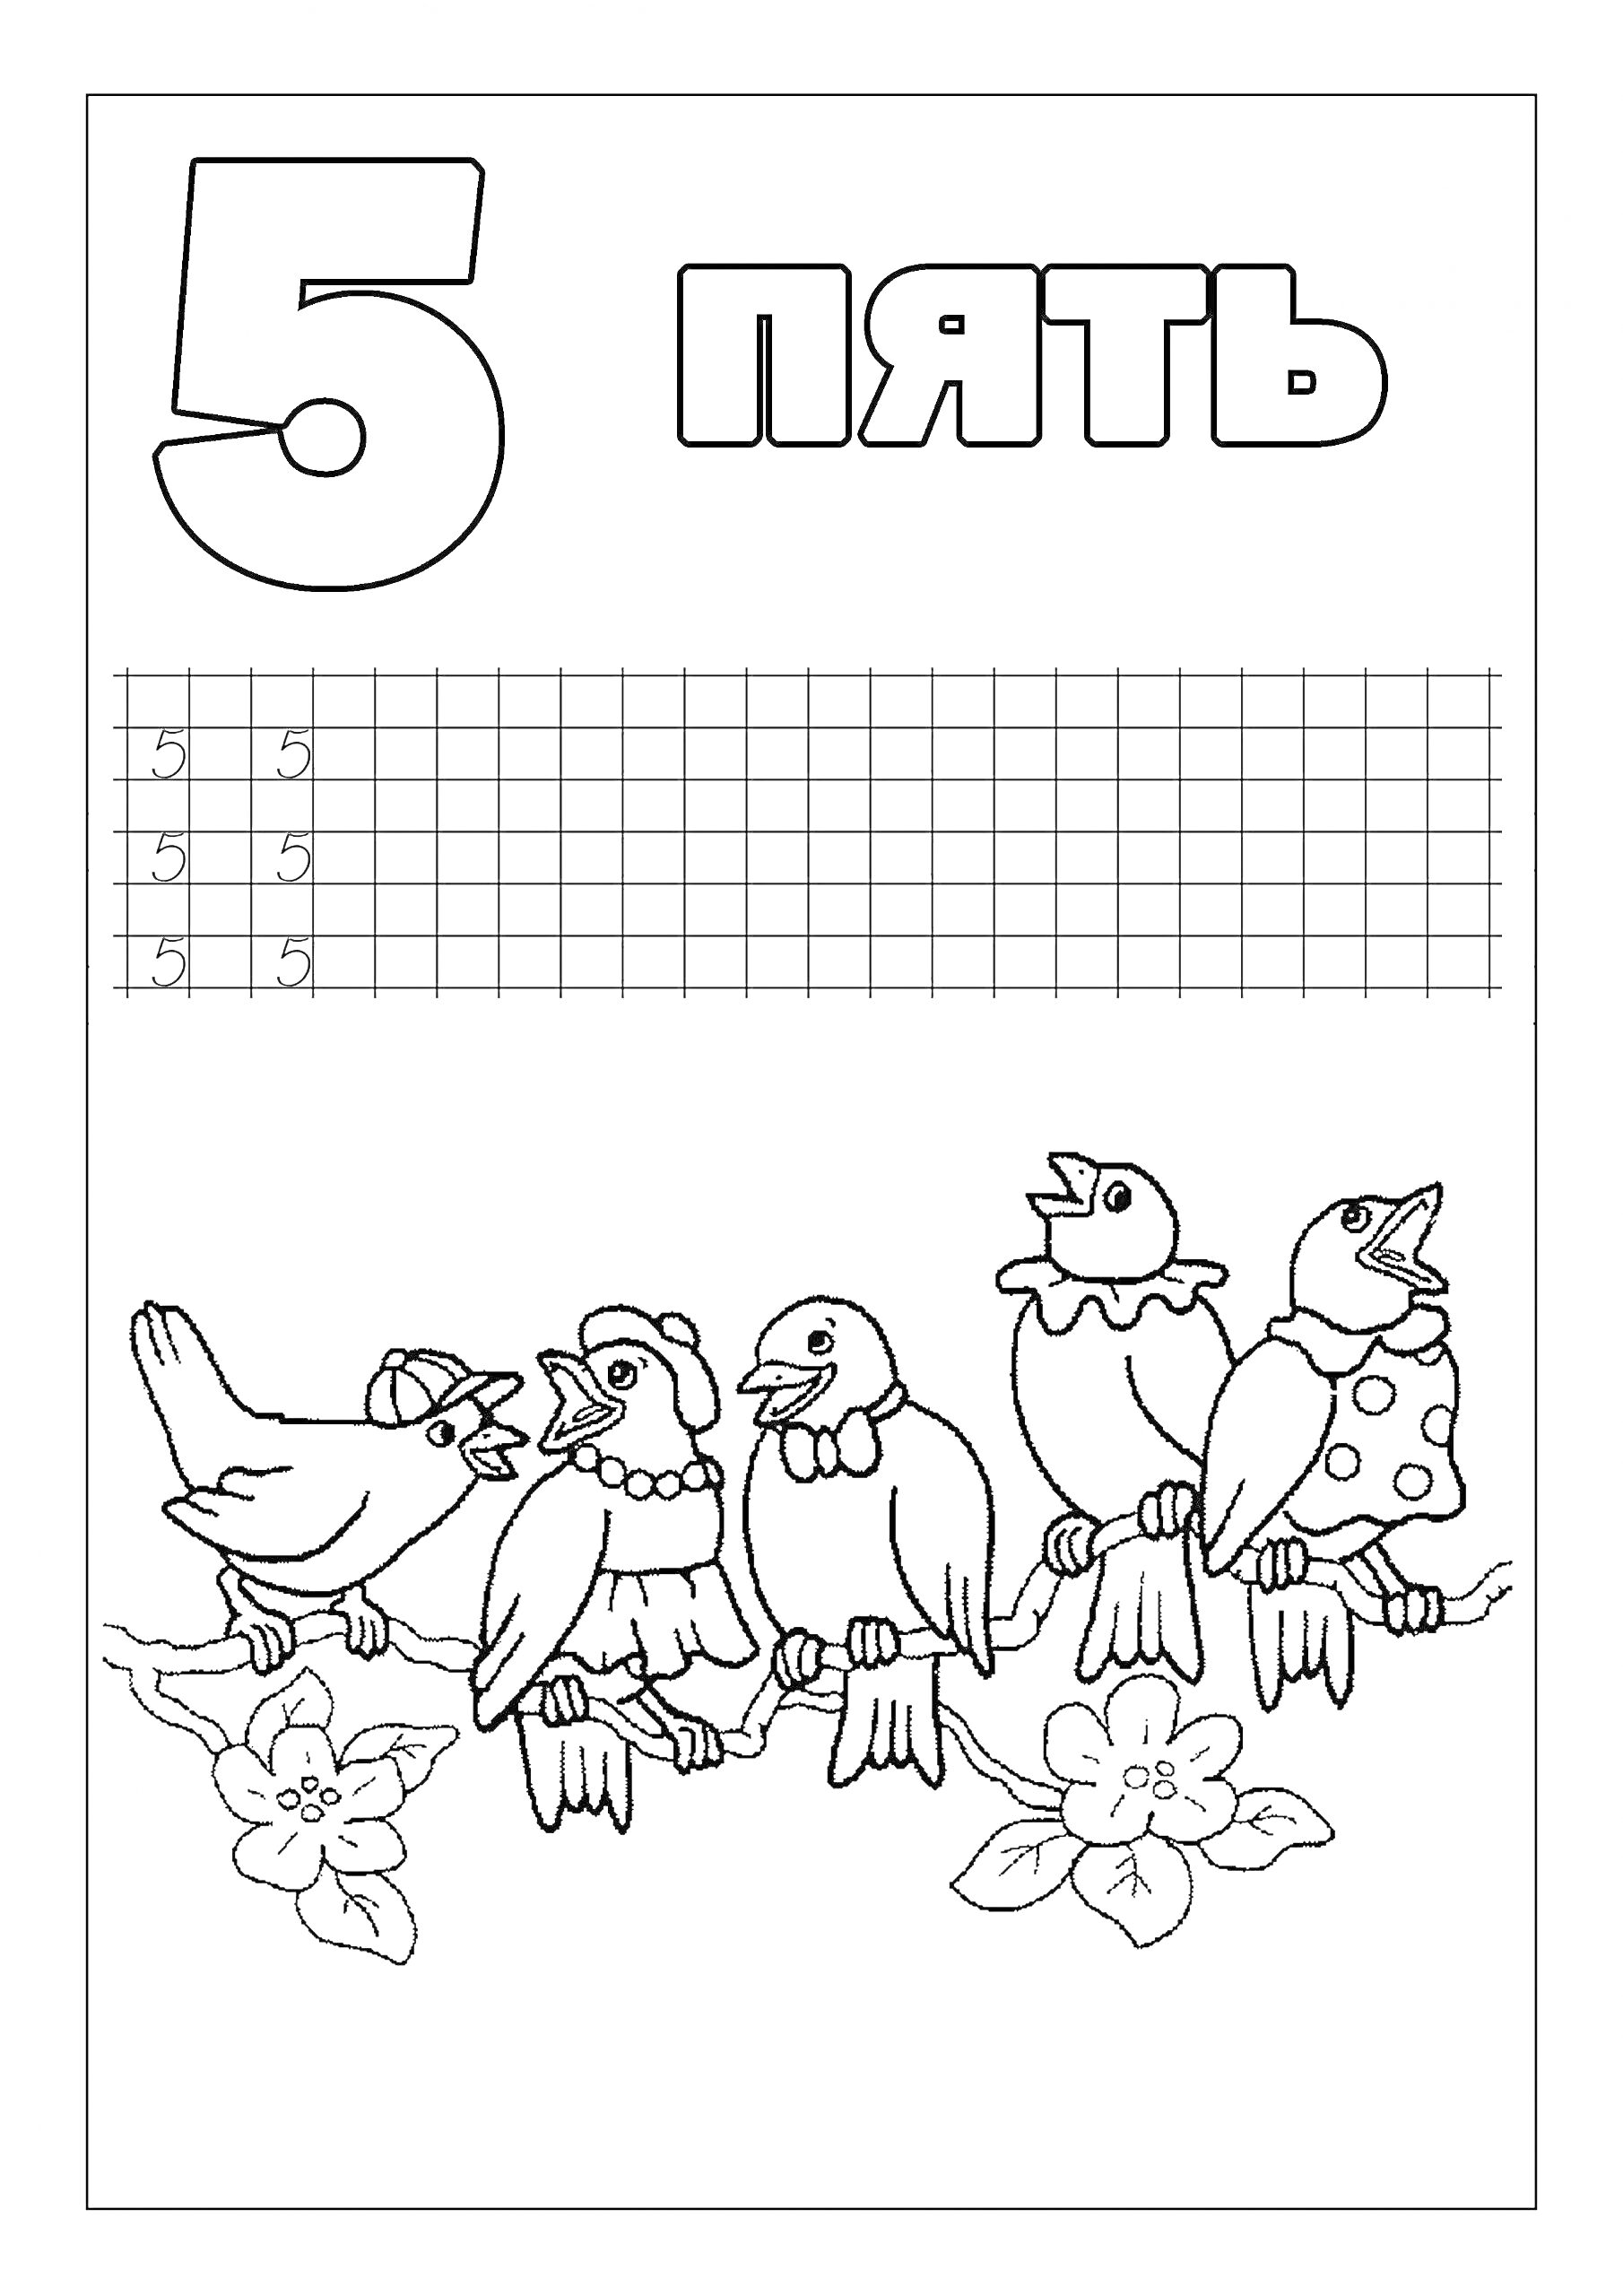 Цифра 5 с пятью птицами на ветке, цветами и таблицей для написания цифры 5